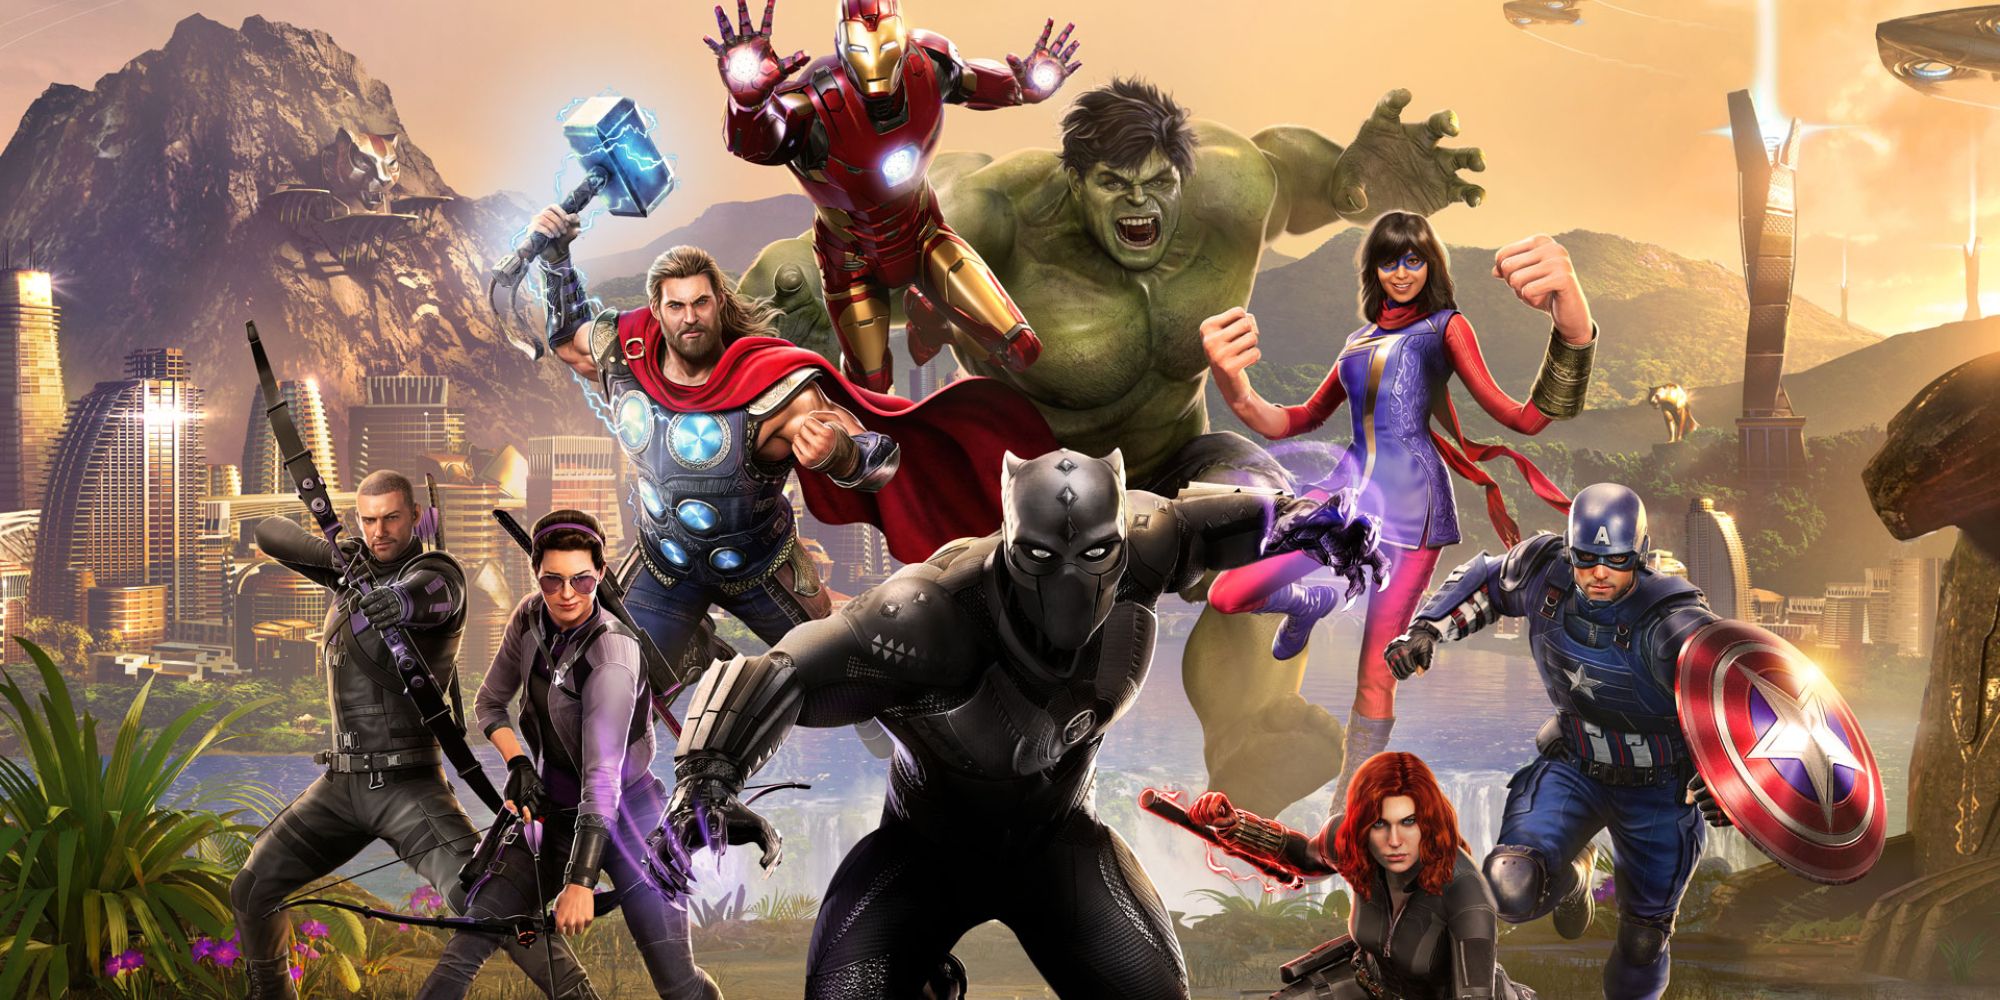 Multiple heroes from Marvel's Avengers